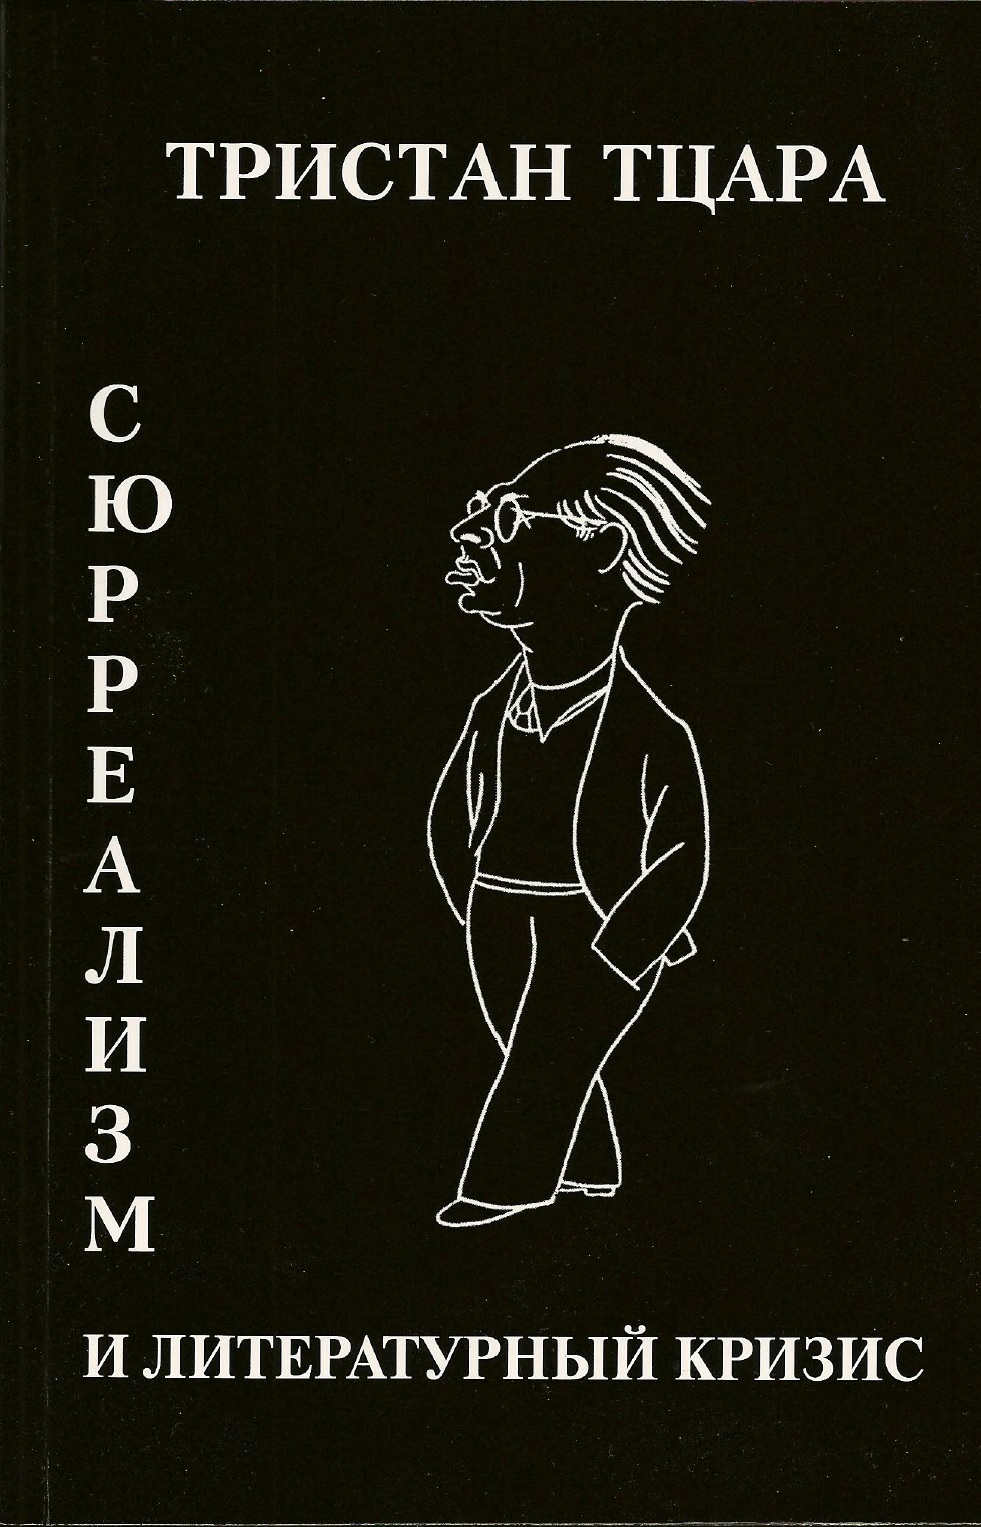 Обложка Тристан Тцара. Сюрреализм и литературный кризис (1946)